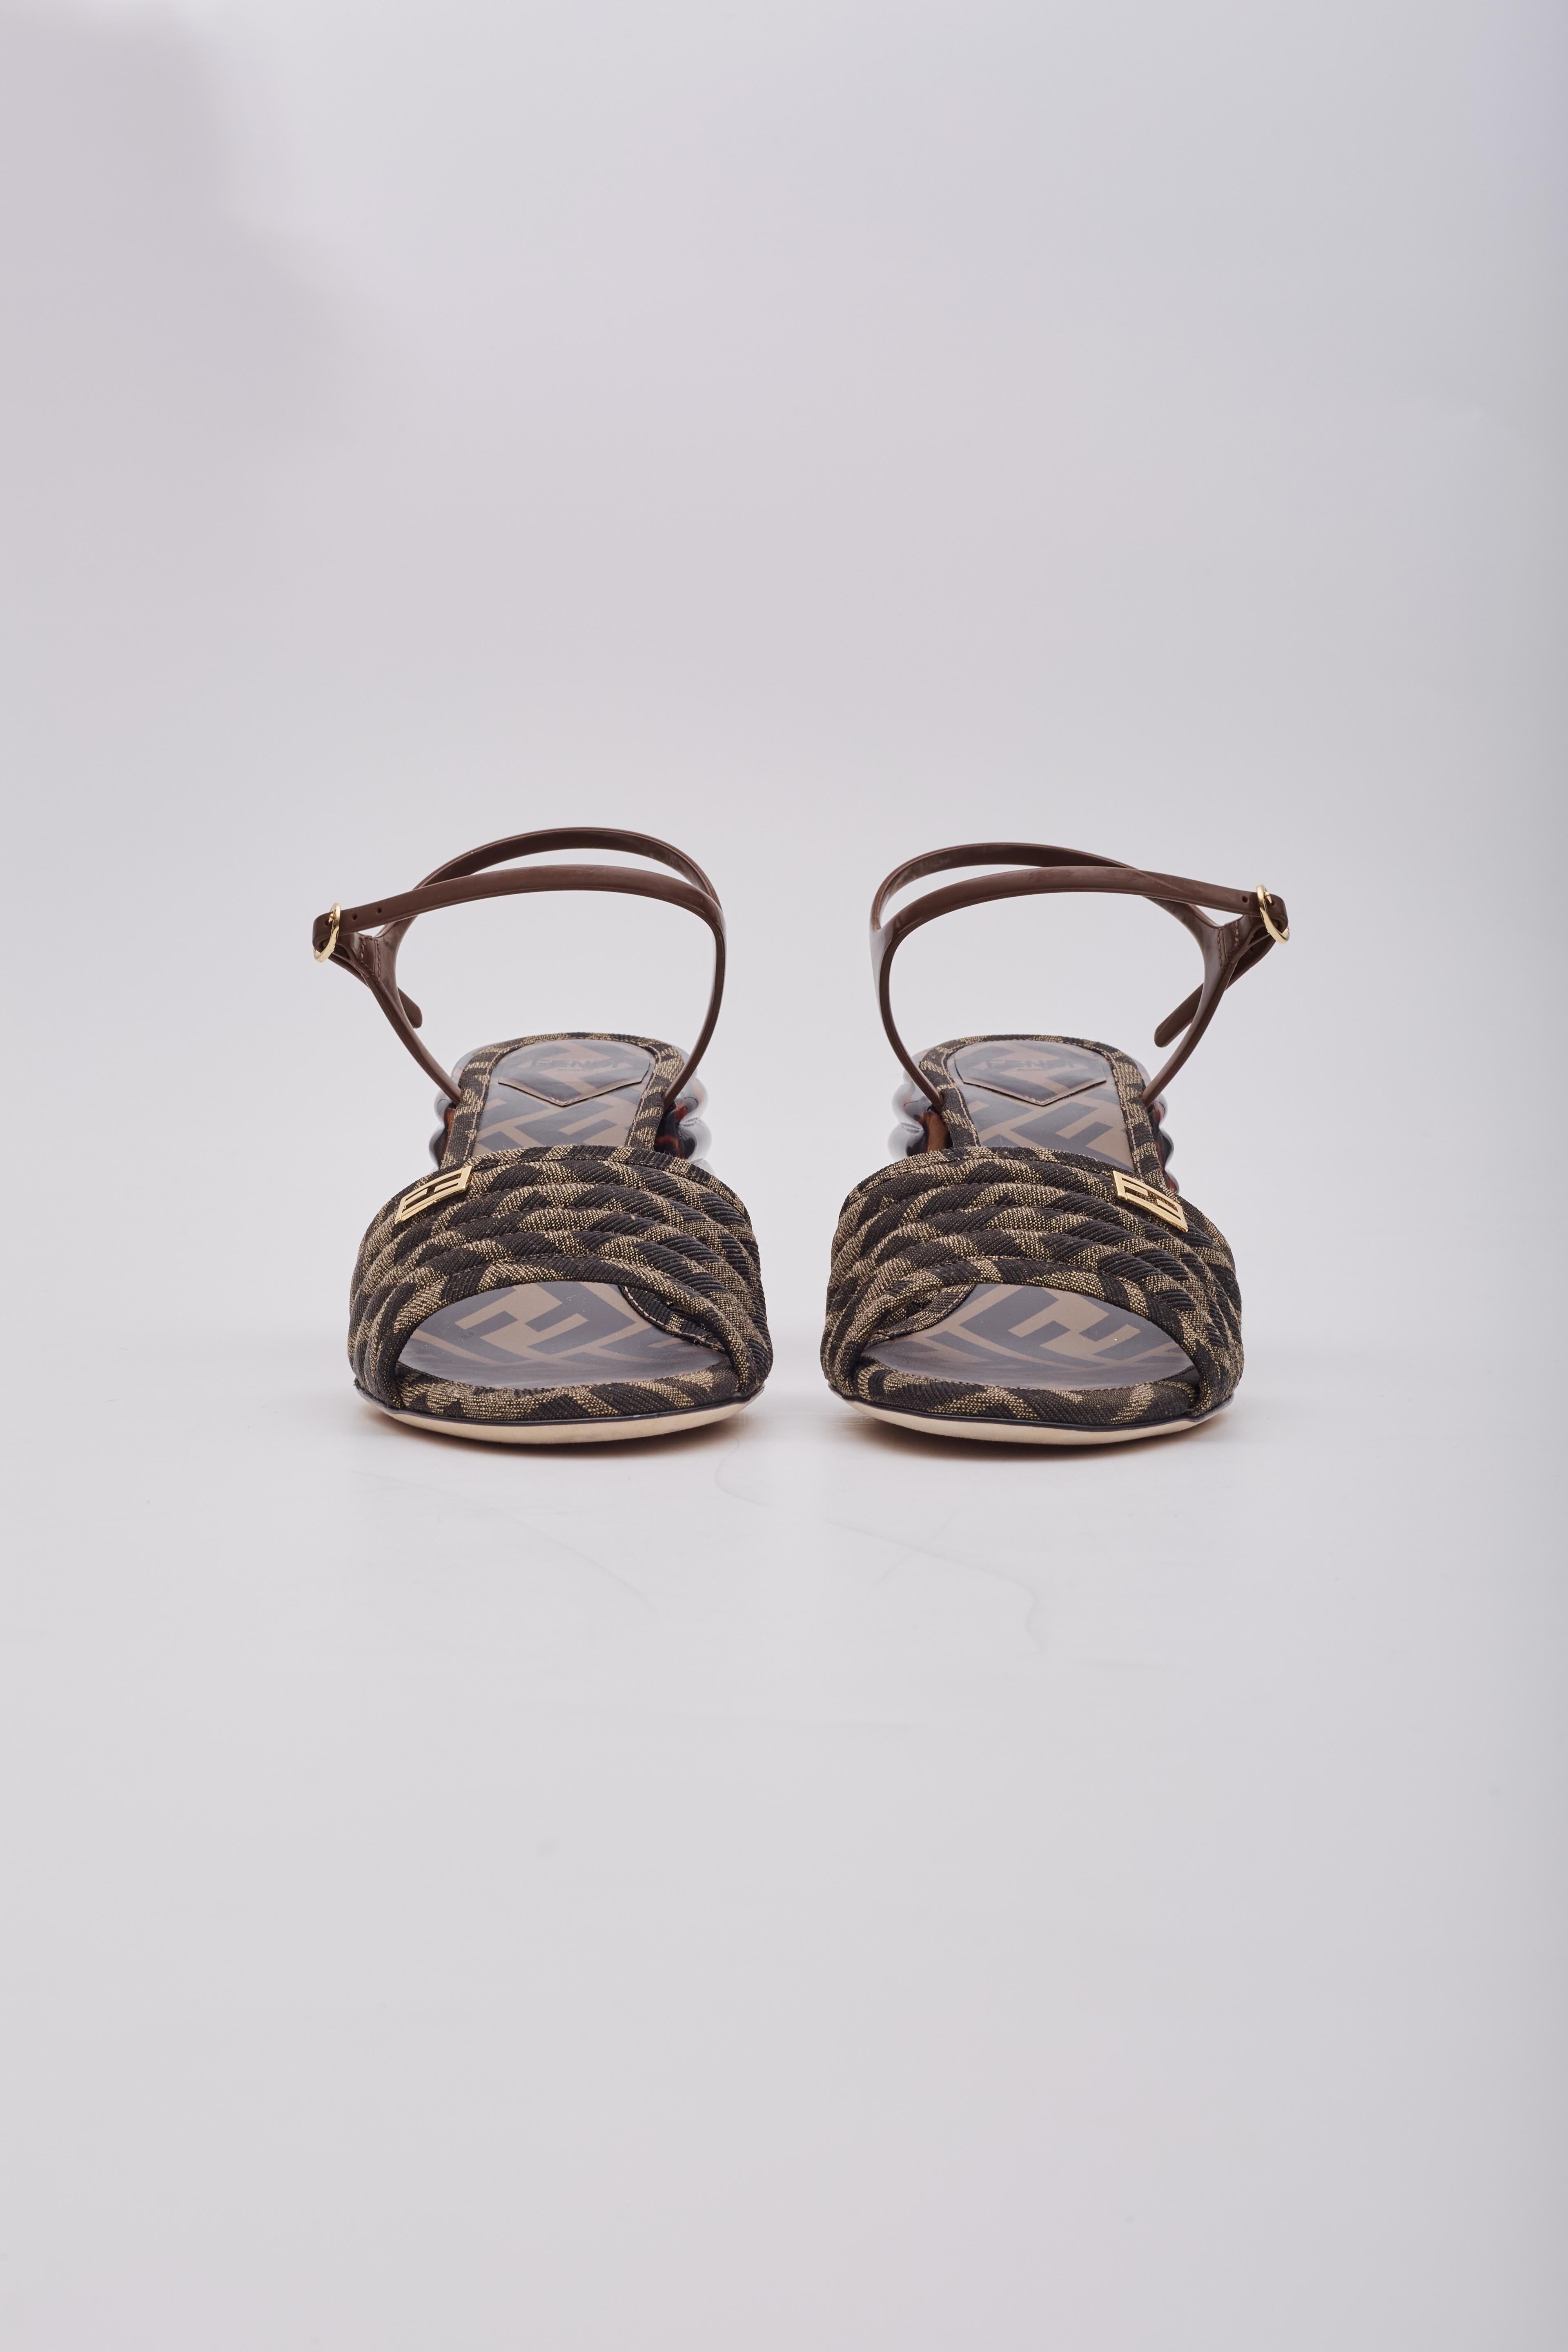 Ces sandales compensées de promenade présentent une toile avec un motif jacquard zucca sur le bout du pied, des talons compensés de 2,5 pouces, une semelle intérieure marquée et une bride de cheville marron. 

Couleur : brun tabac
Matière : toile